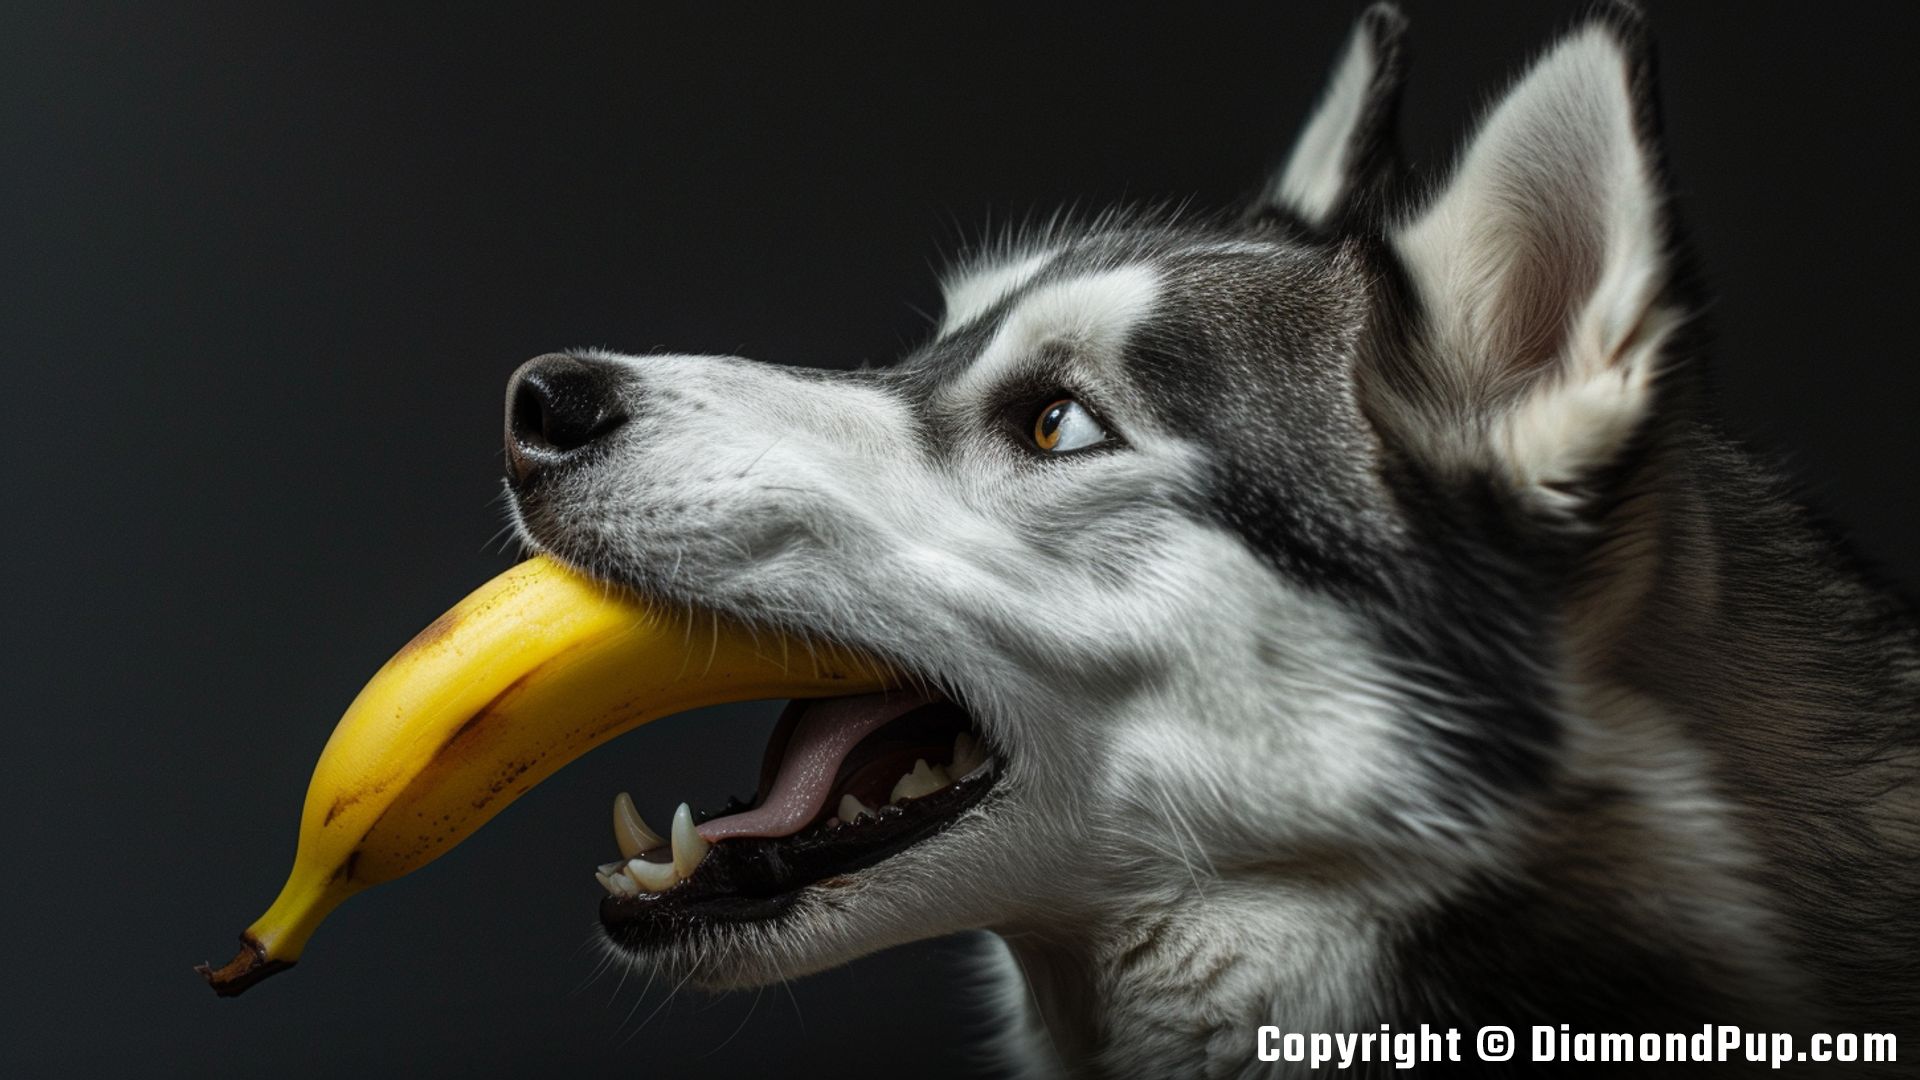 Photograph of a Playful Husky Snacking on Banana